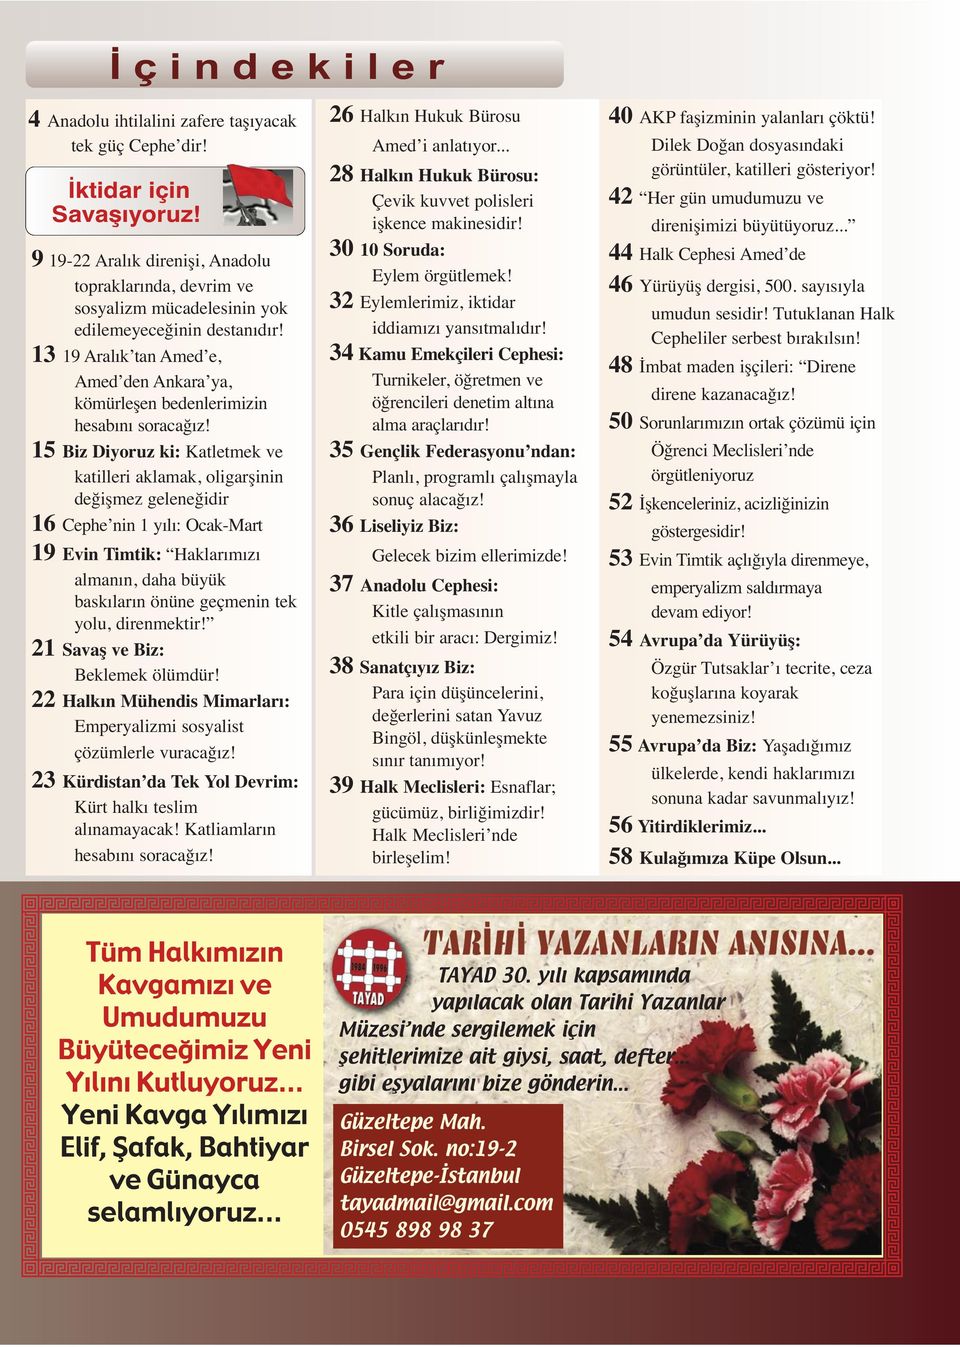 13 19 Aralık tan Amed e, Amed den Ankara ya, kömürleşen bedenlerimizin hesabını soracağız!